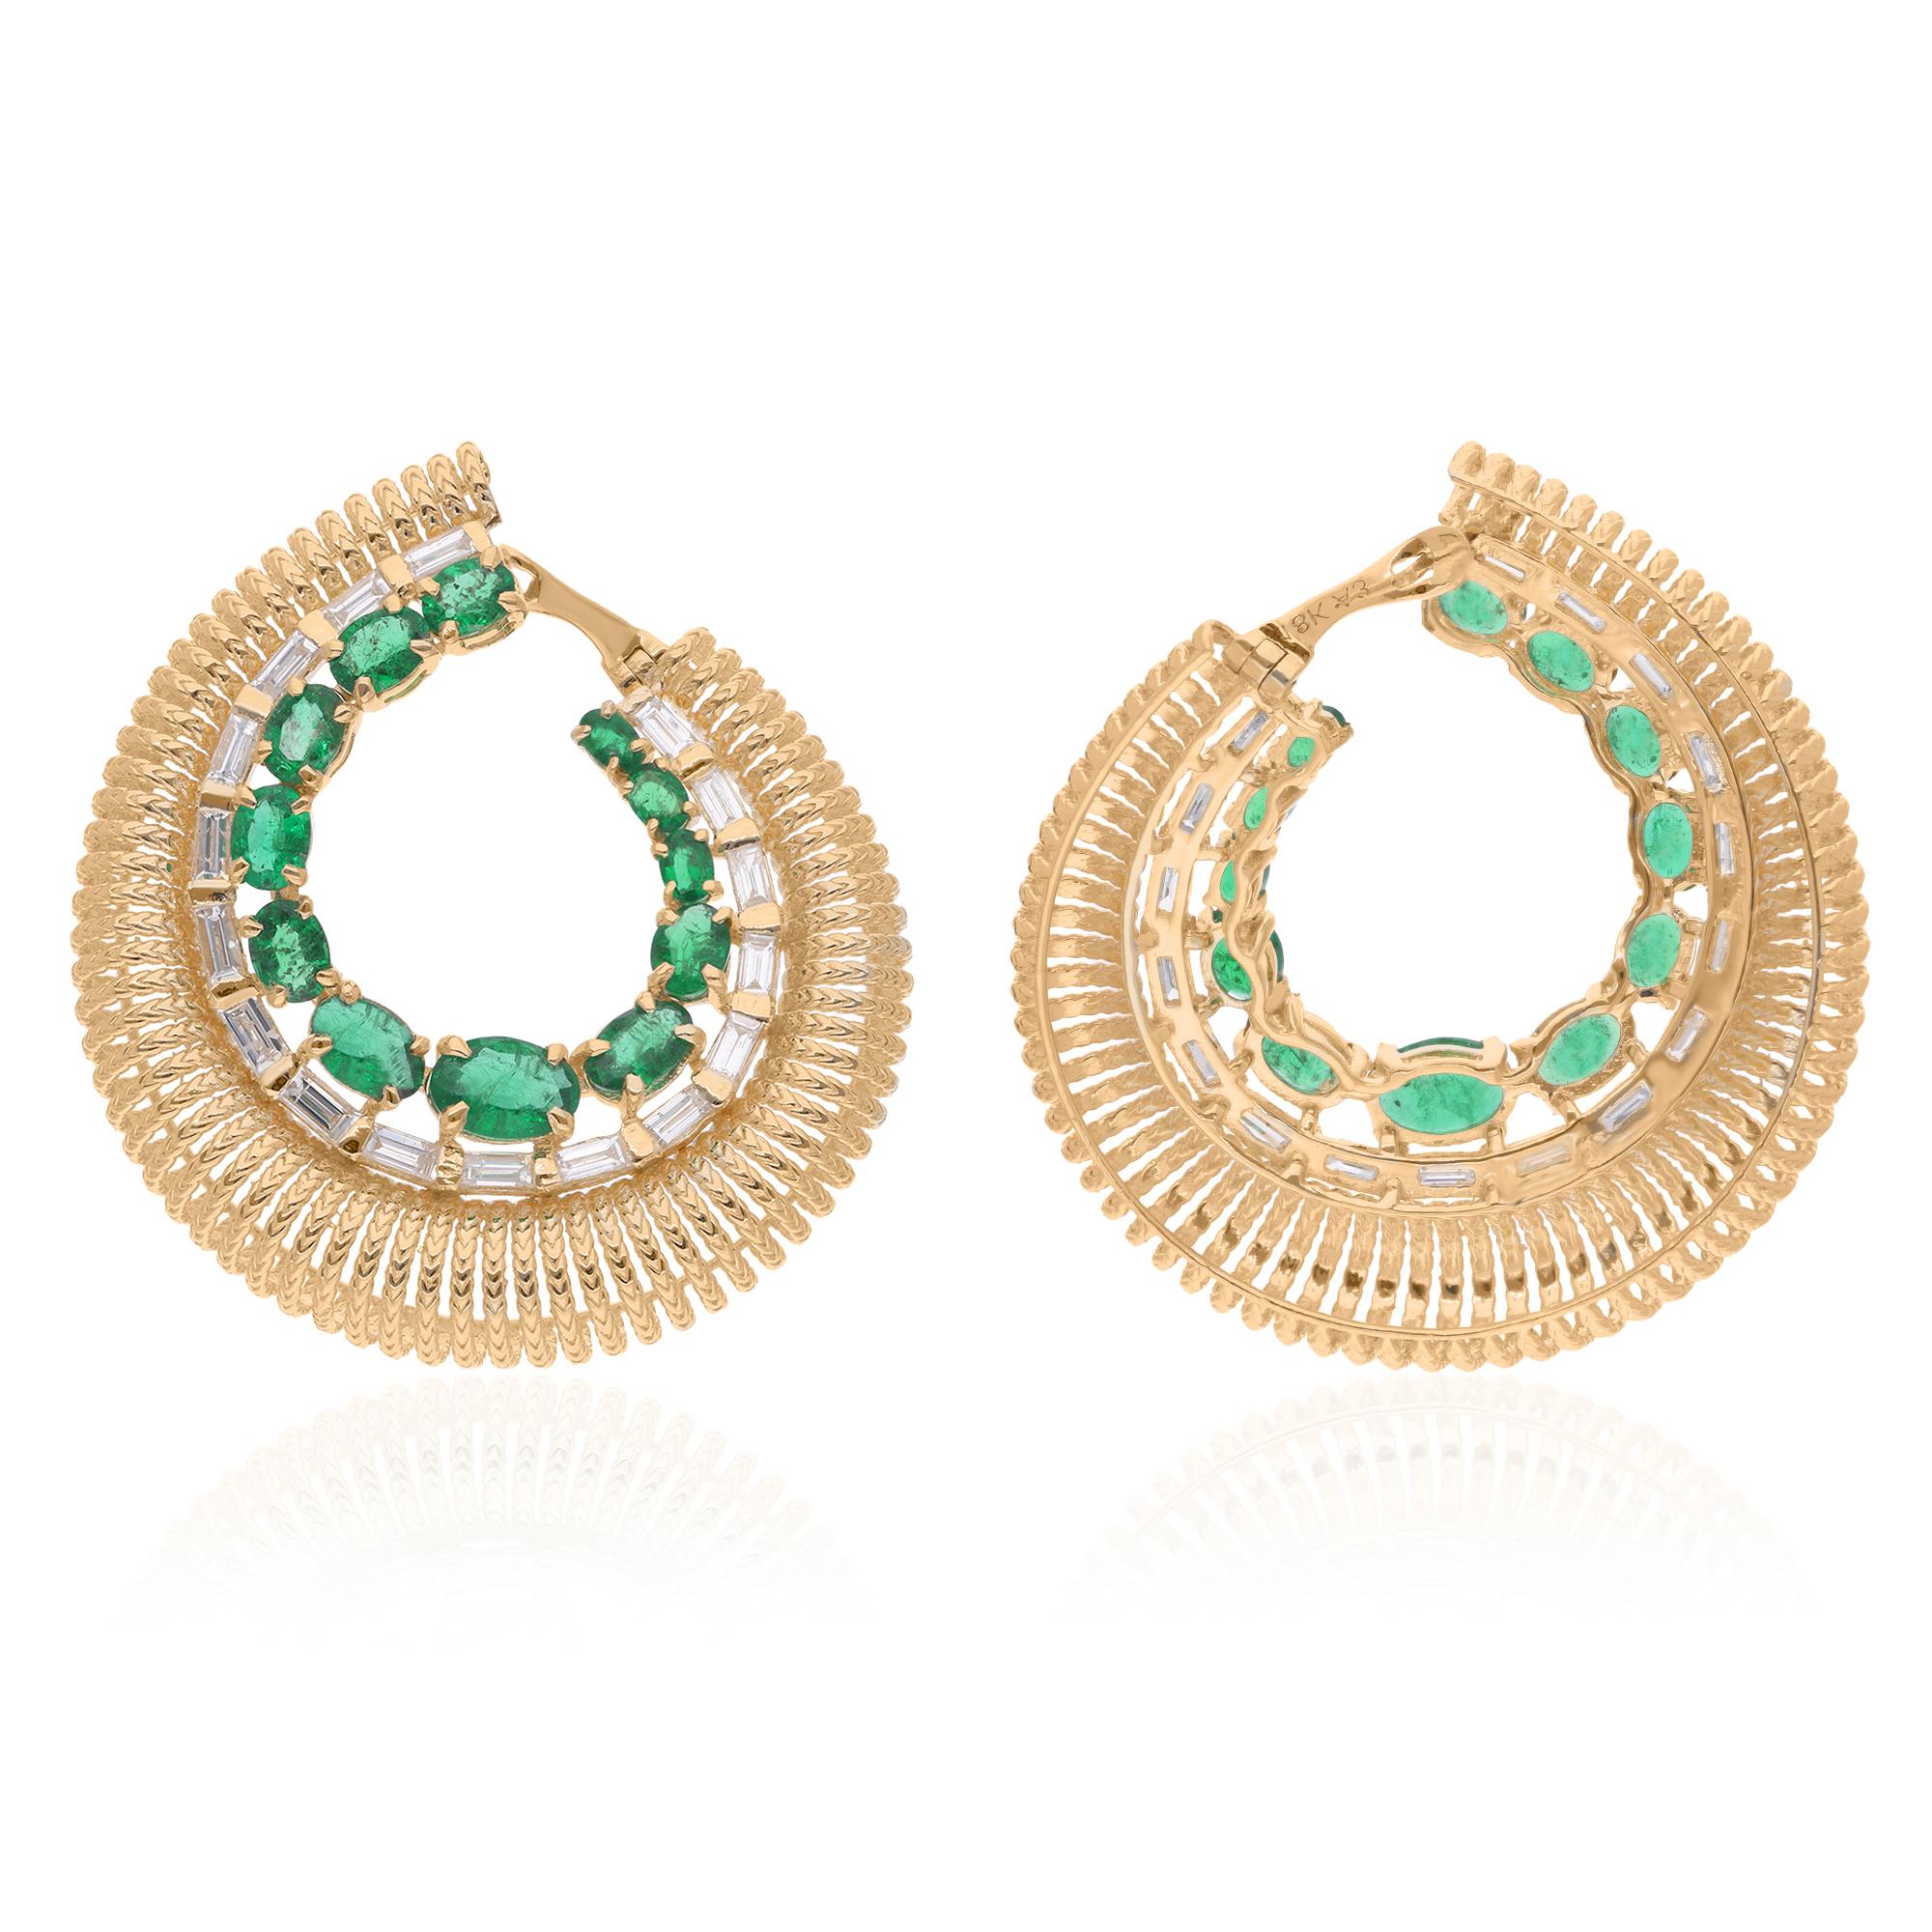 Treten Sie ein in eine Welt der Eleganz und des Zaubers mit diesen bezaubernden ovalen sambischen Smaragd-Ohrringen, die mit schimmernden Baguette-Diamanten besetzt sind und fachmännisch in luxuriösem 18 Karat Gelbgold gefertigt wurden. Diese